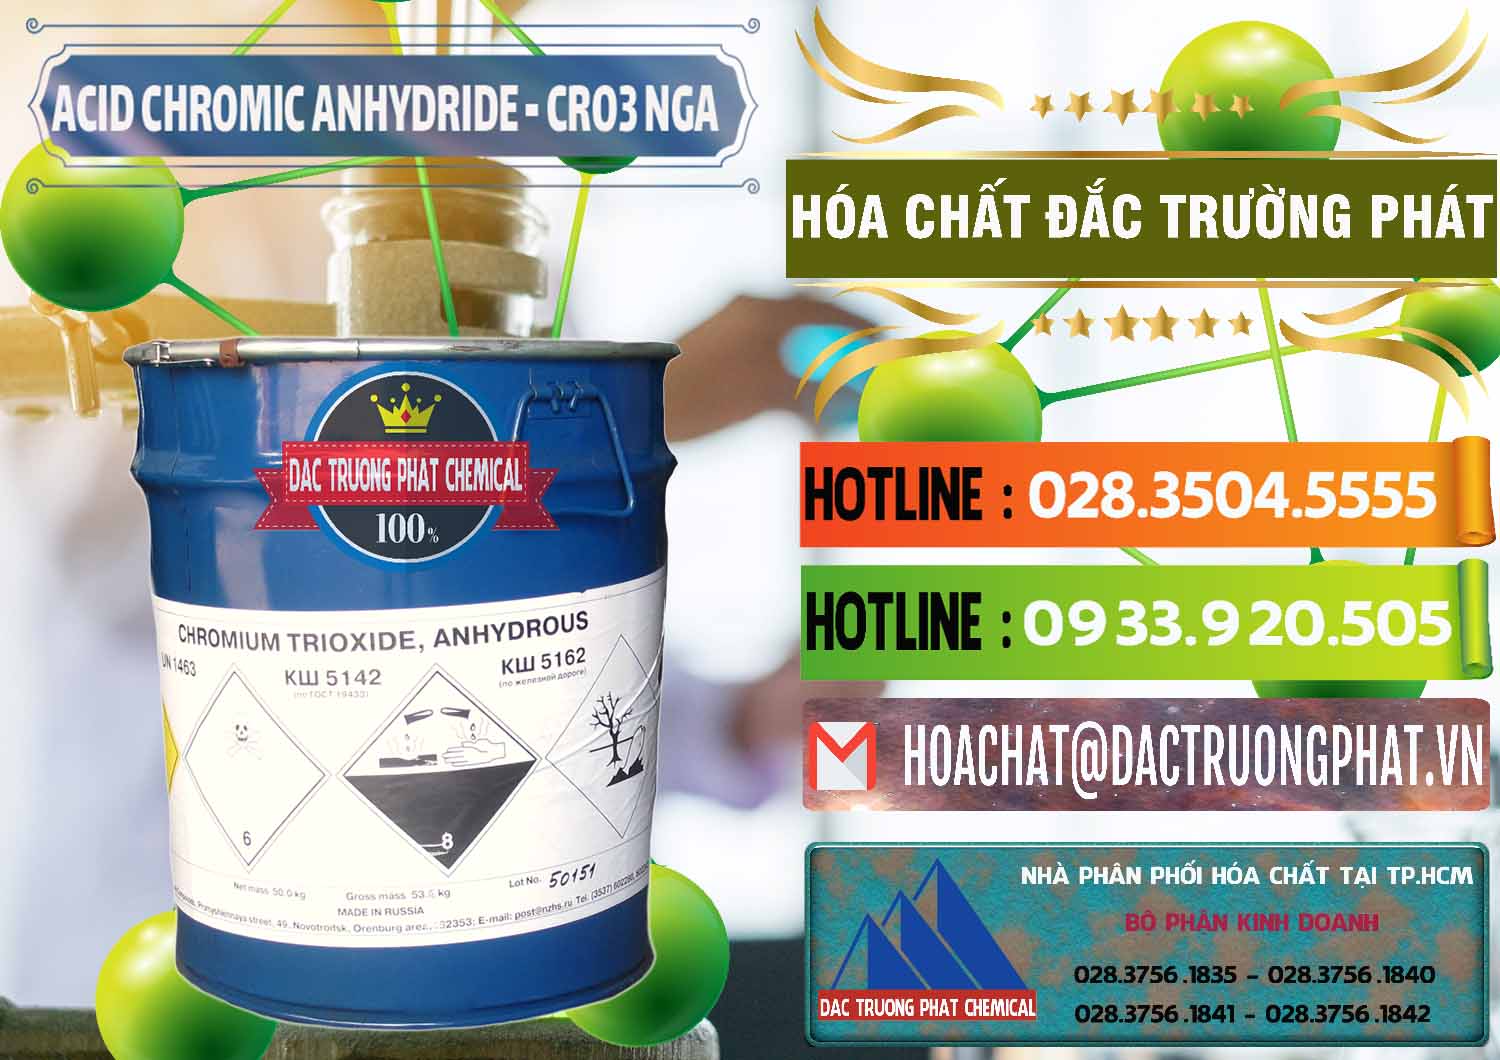 Đơn vị chuyên cung cấp ( bán ) Acid Chromic Anhydride - Cromic CRO3 Nga Russia - 0006 - Cty chuyên phân phối ( kinh doanh ) hóa chất tại TP.HCM - cungcaphoachat.com.vn